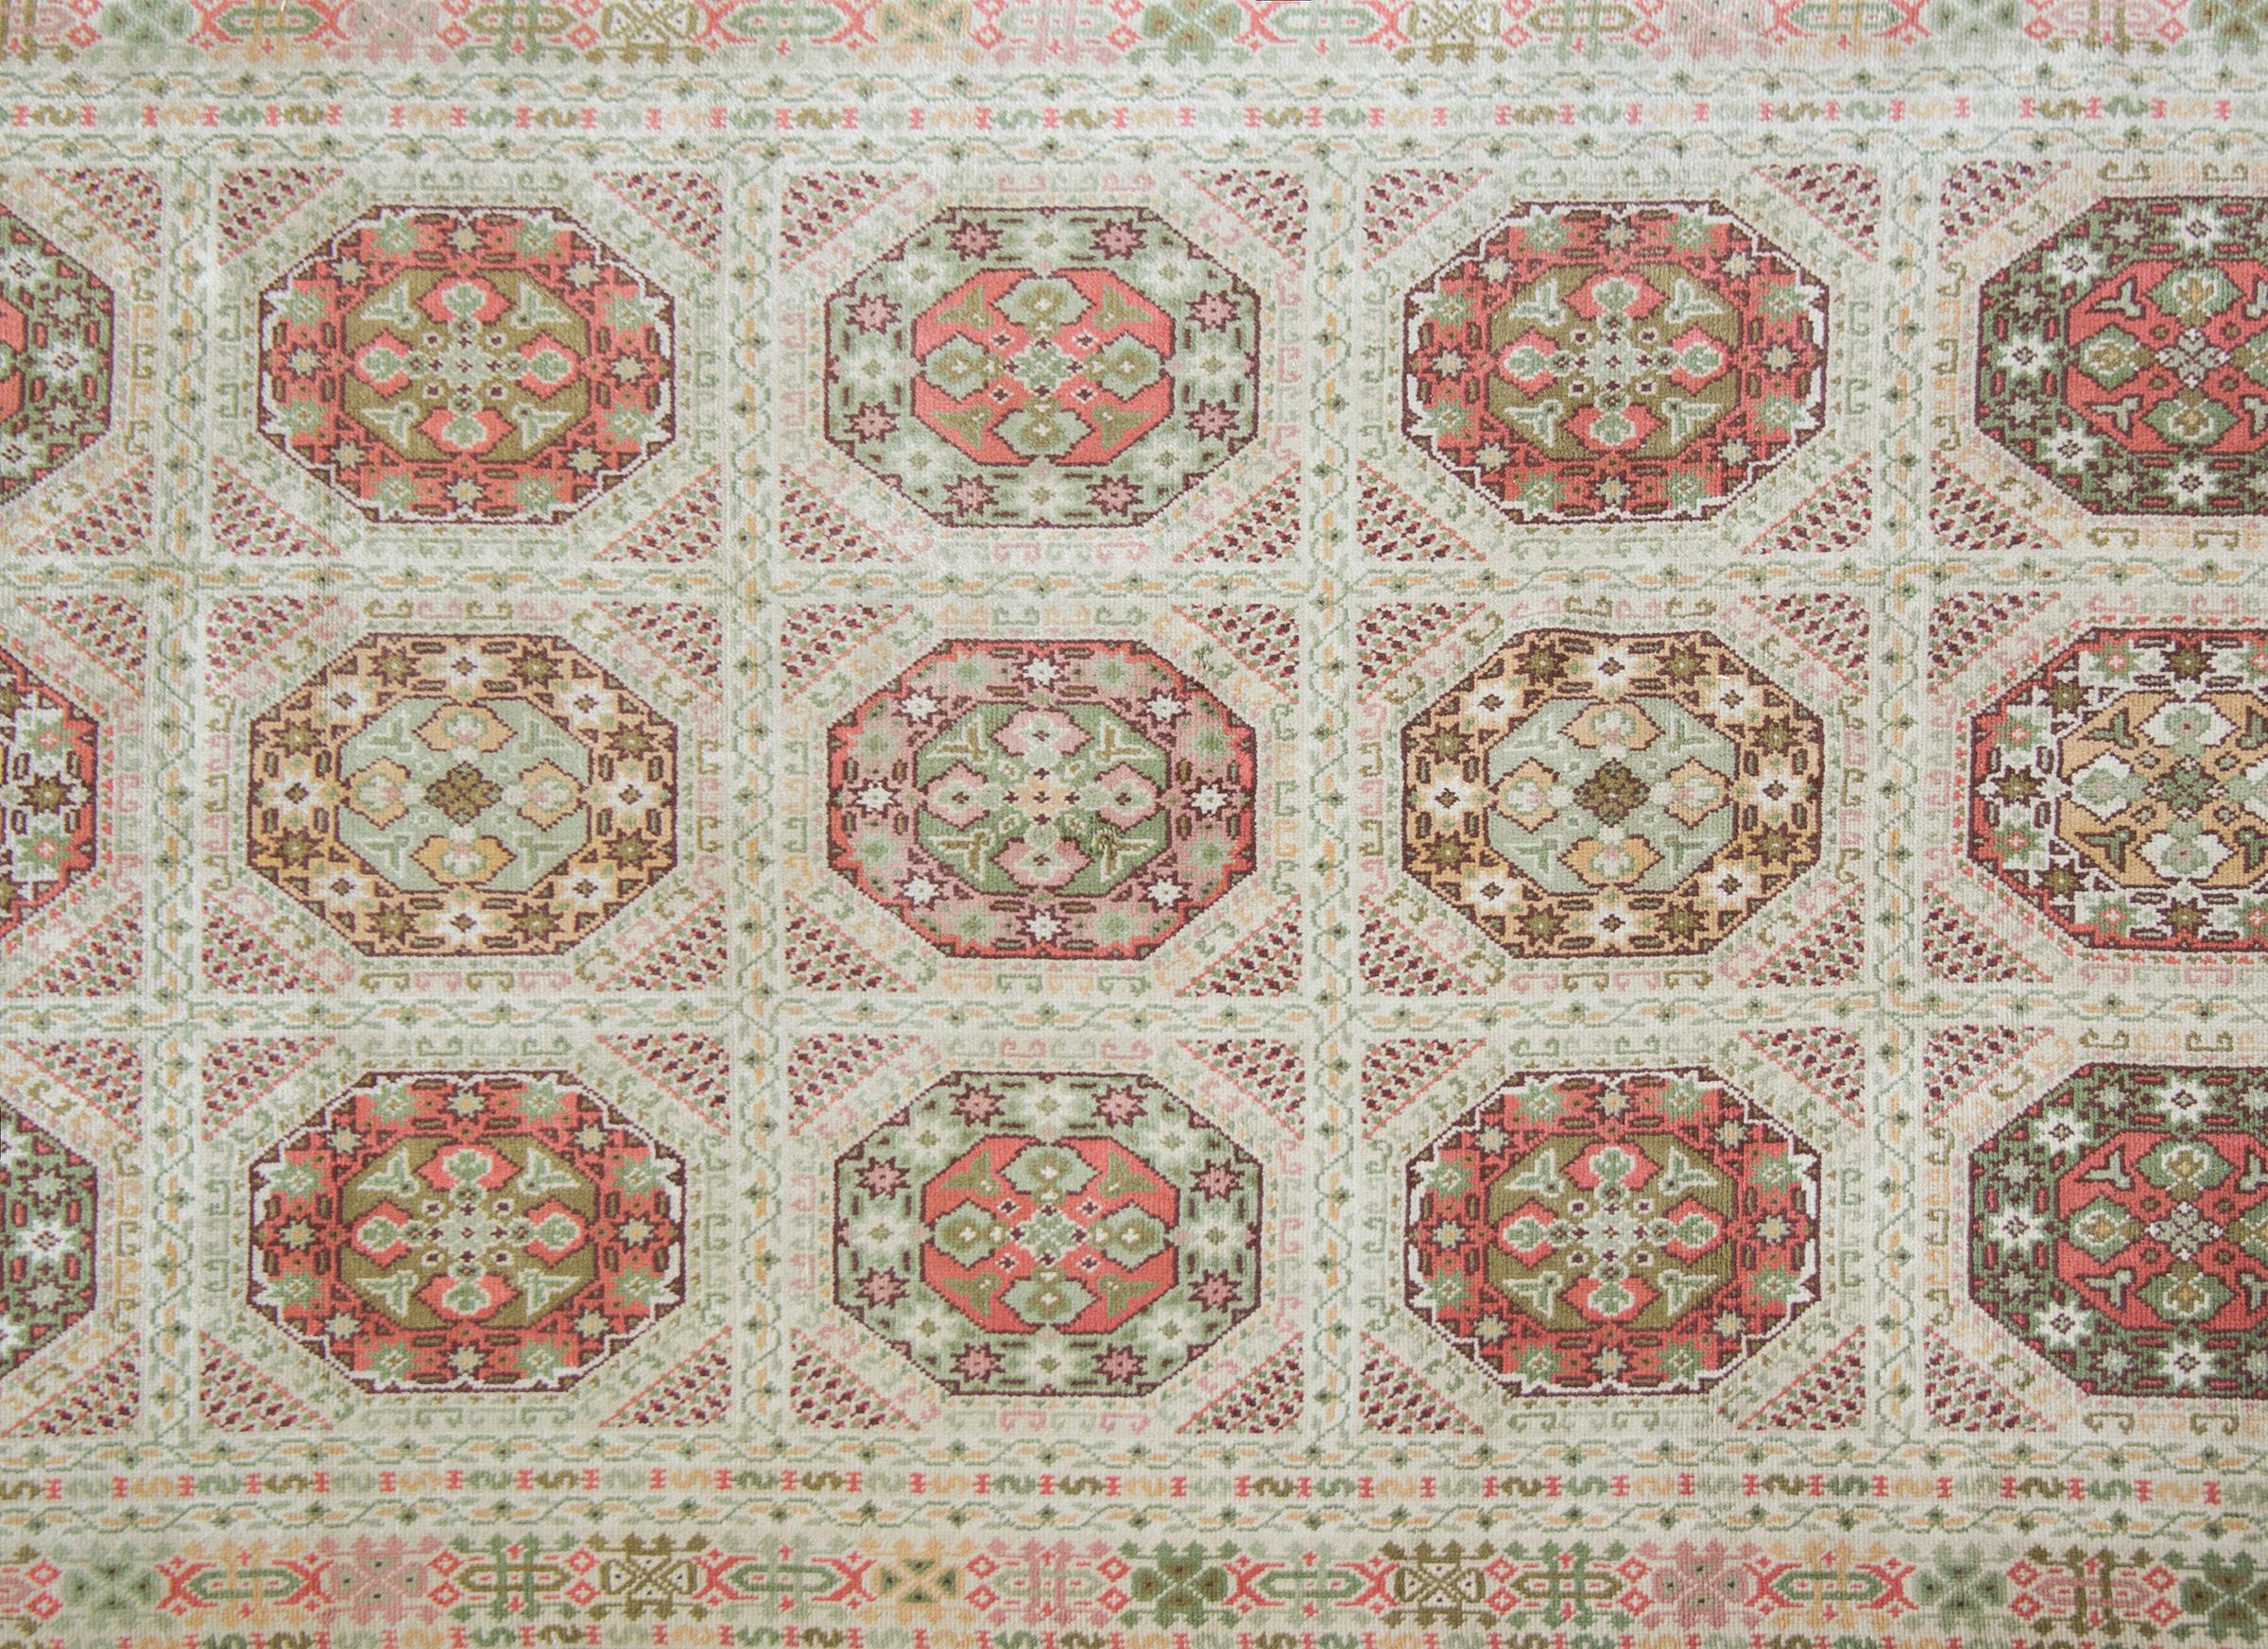 Magnifique tapis autrichien du début du XXe siècle en laine nouée à la main, avec un médaillon octogonal répété et un motif de treillis avec une myriade de fleurs stylisées et de vignes enroulées, entouré d'une bordure avec de multiples bandes fines